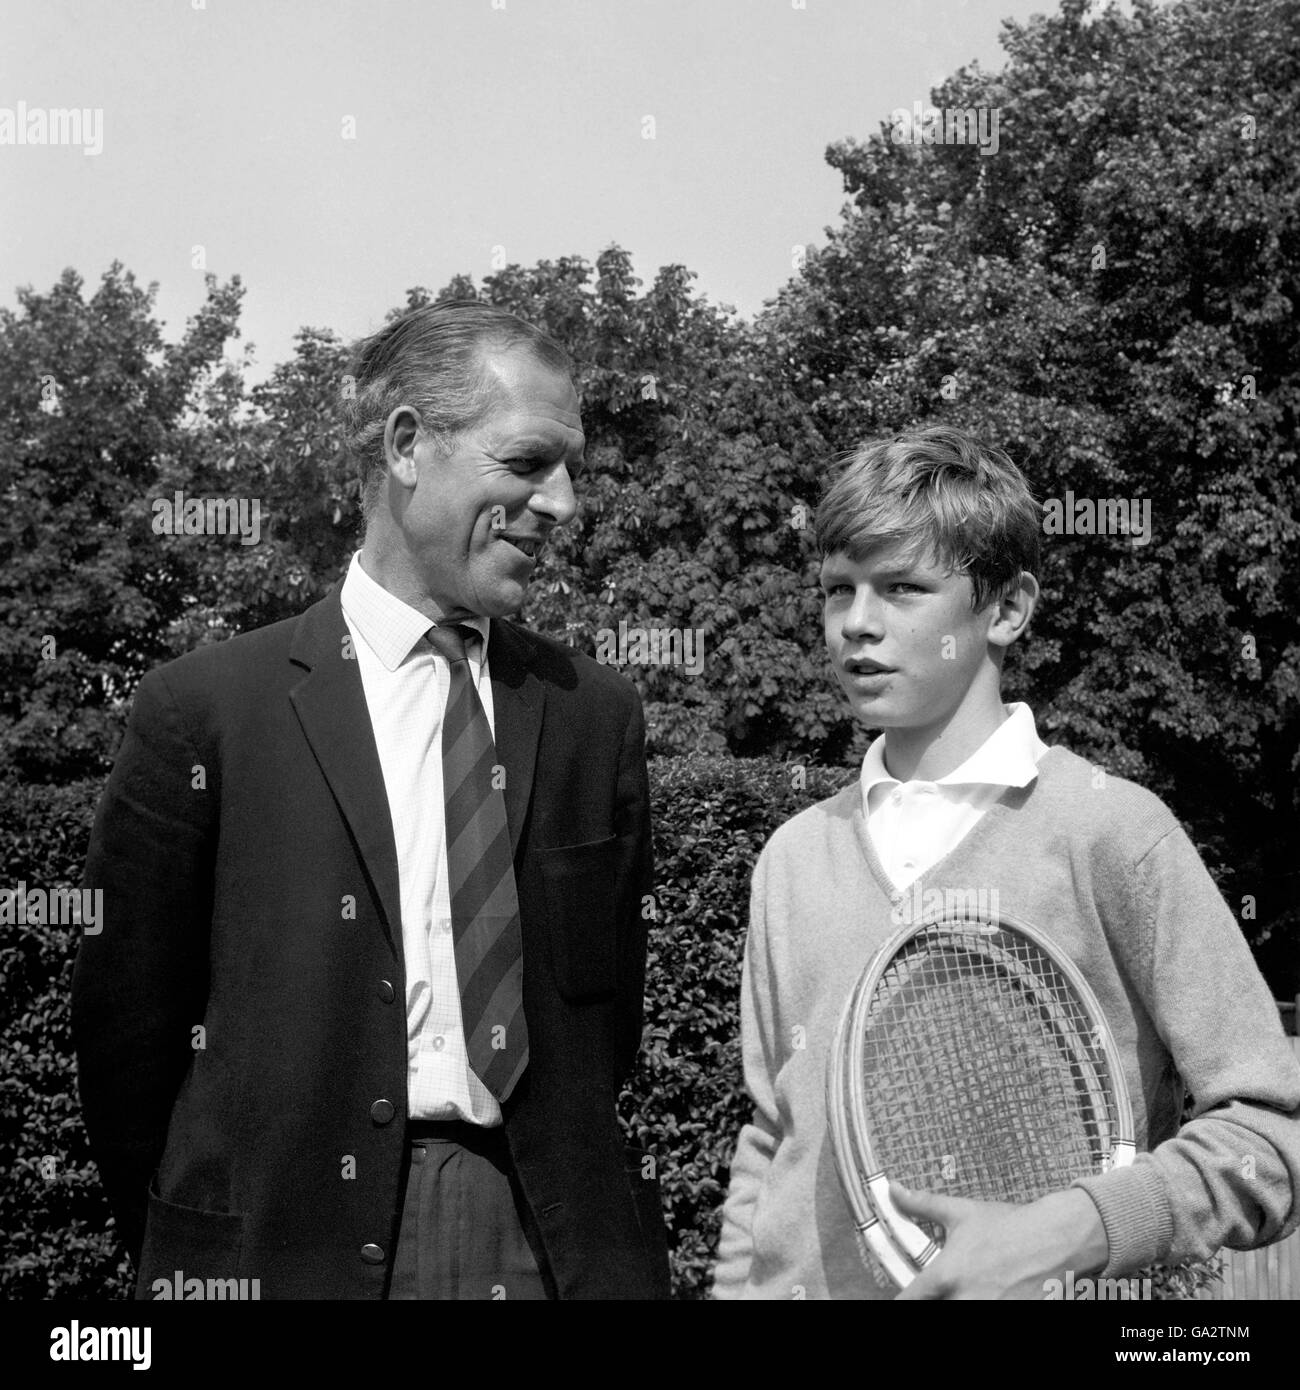 Chris Mottram, 13 anni, con suo padre Tony Mottram ai Junior Tennis Championships presso l'All England Club di Wimbledon. Foto Stock